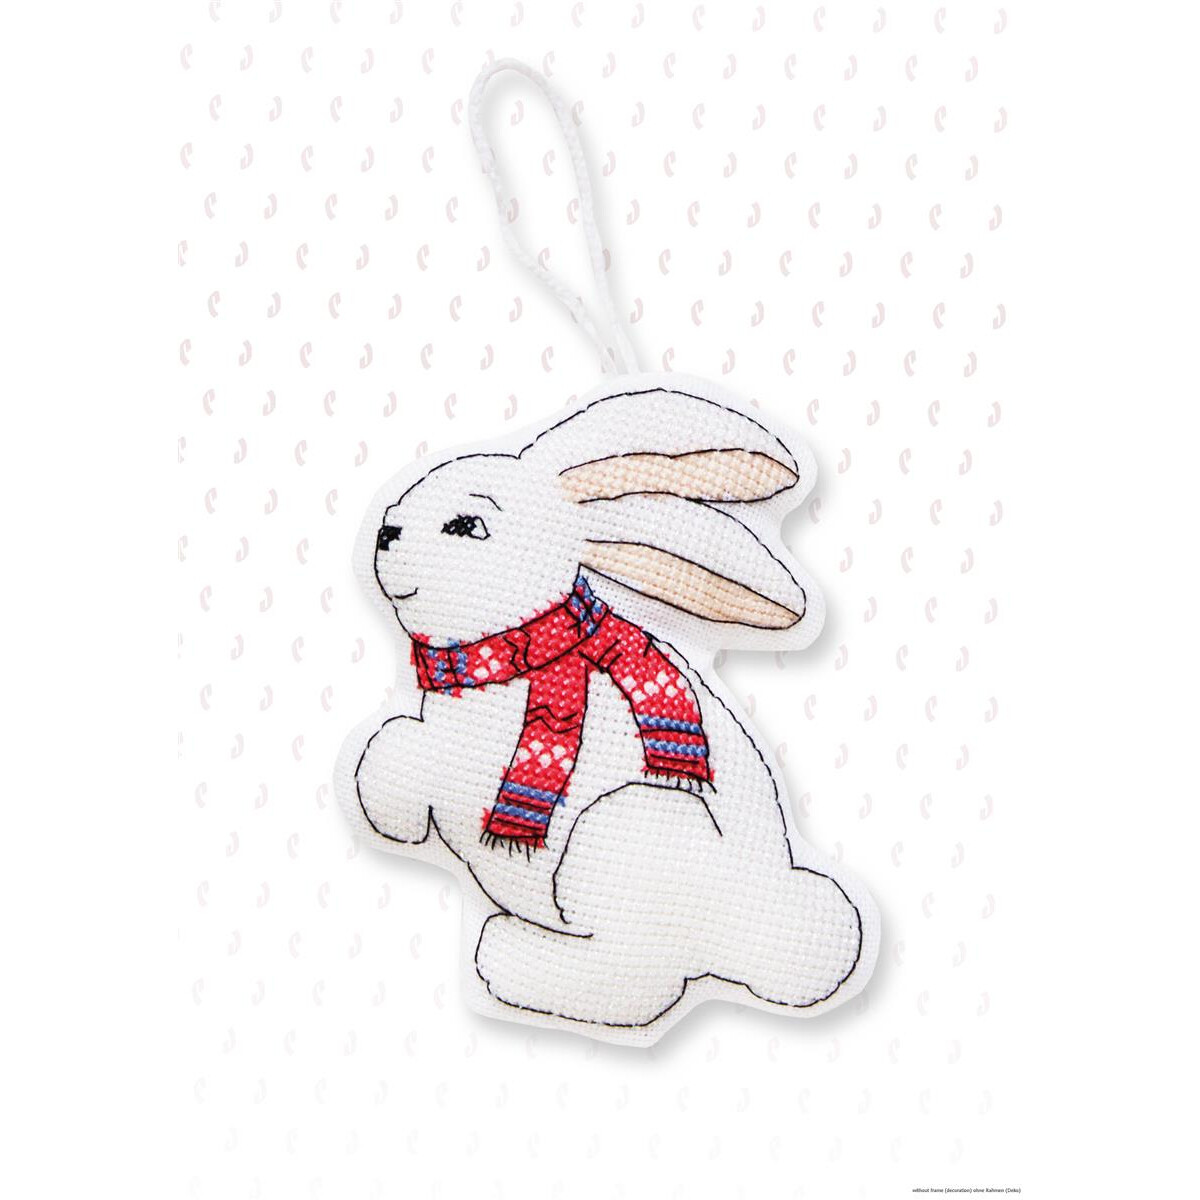 Un coniglietto bianco a punto croce con una sciarpa rossa...